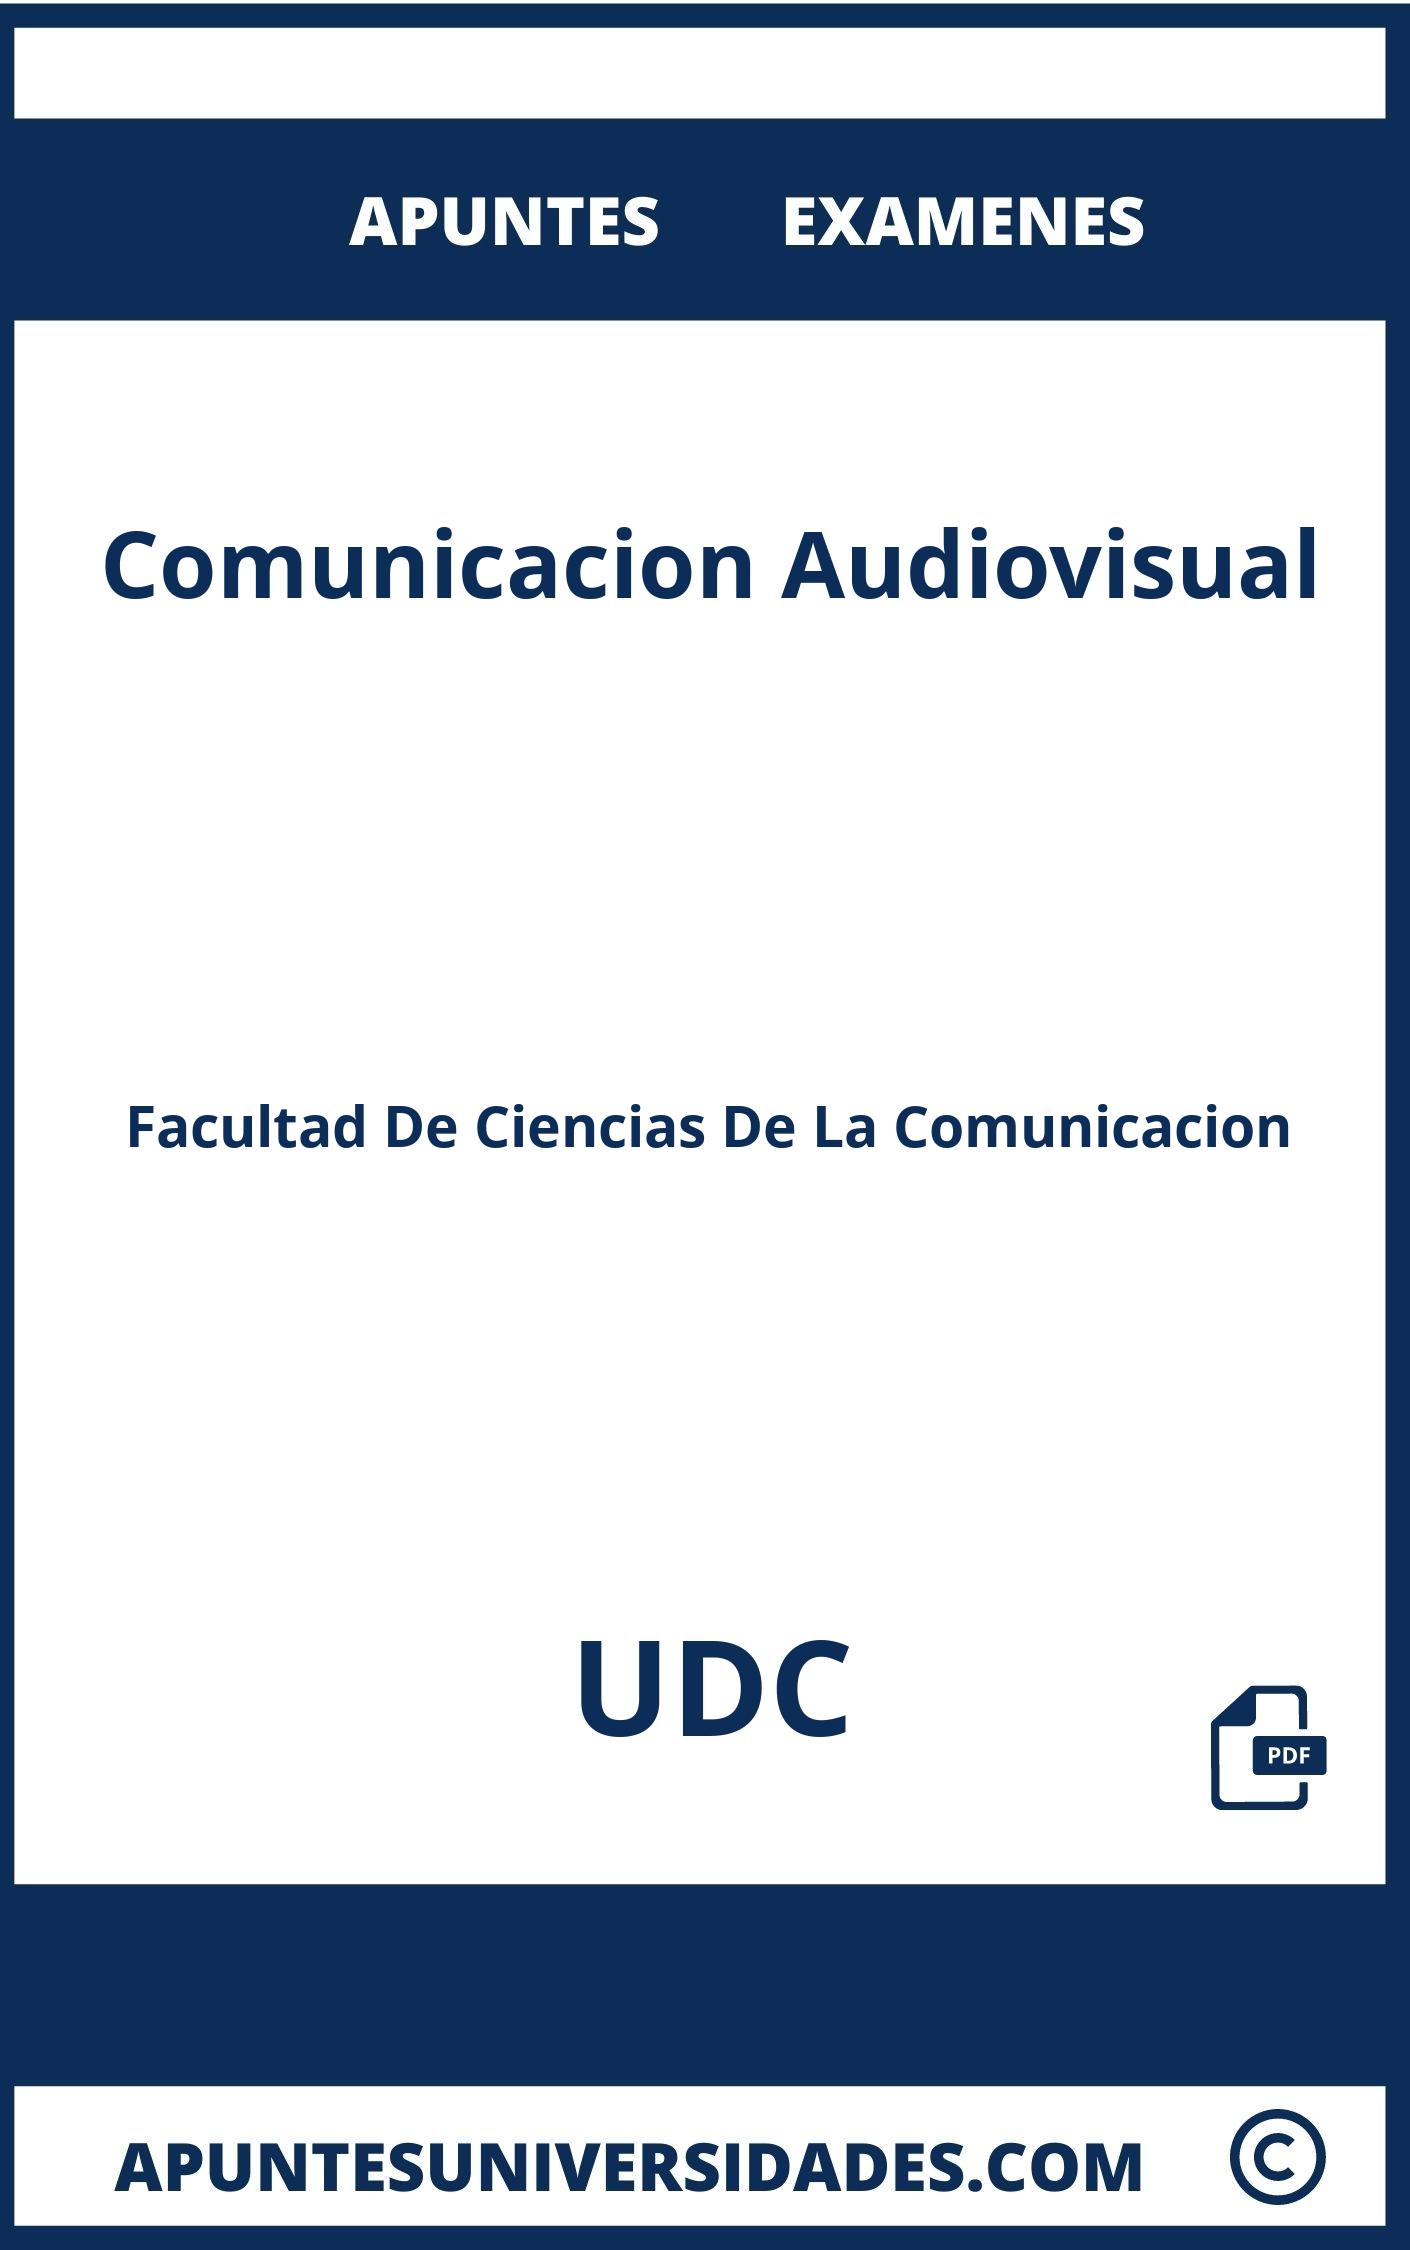 Examenes Comunicacion Audiovisual UDC y Apuntes